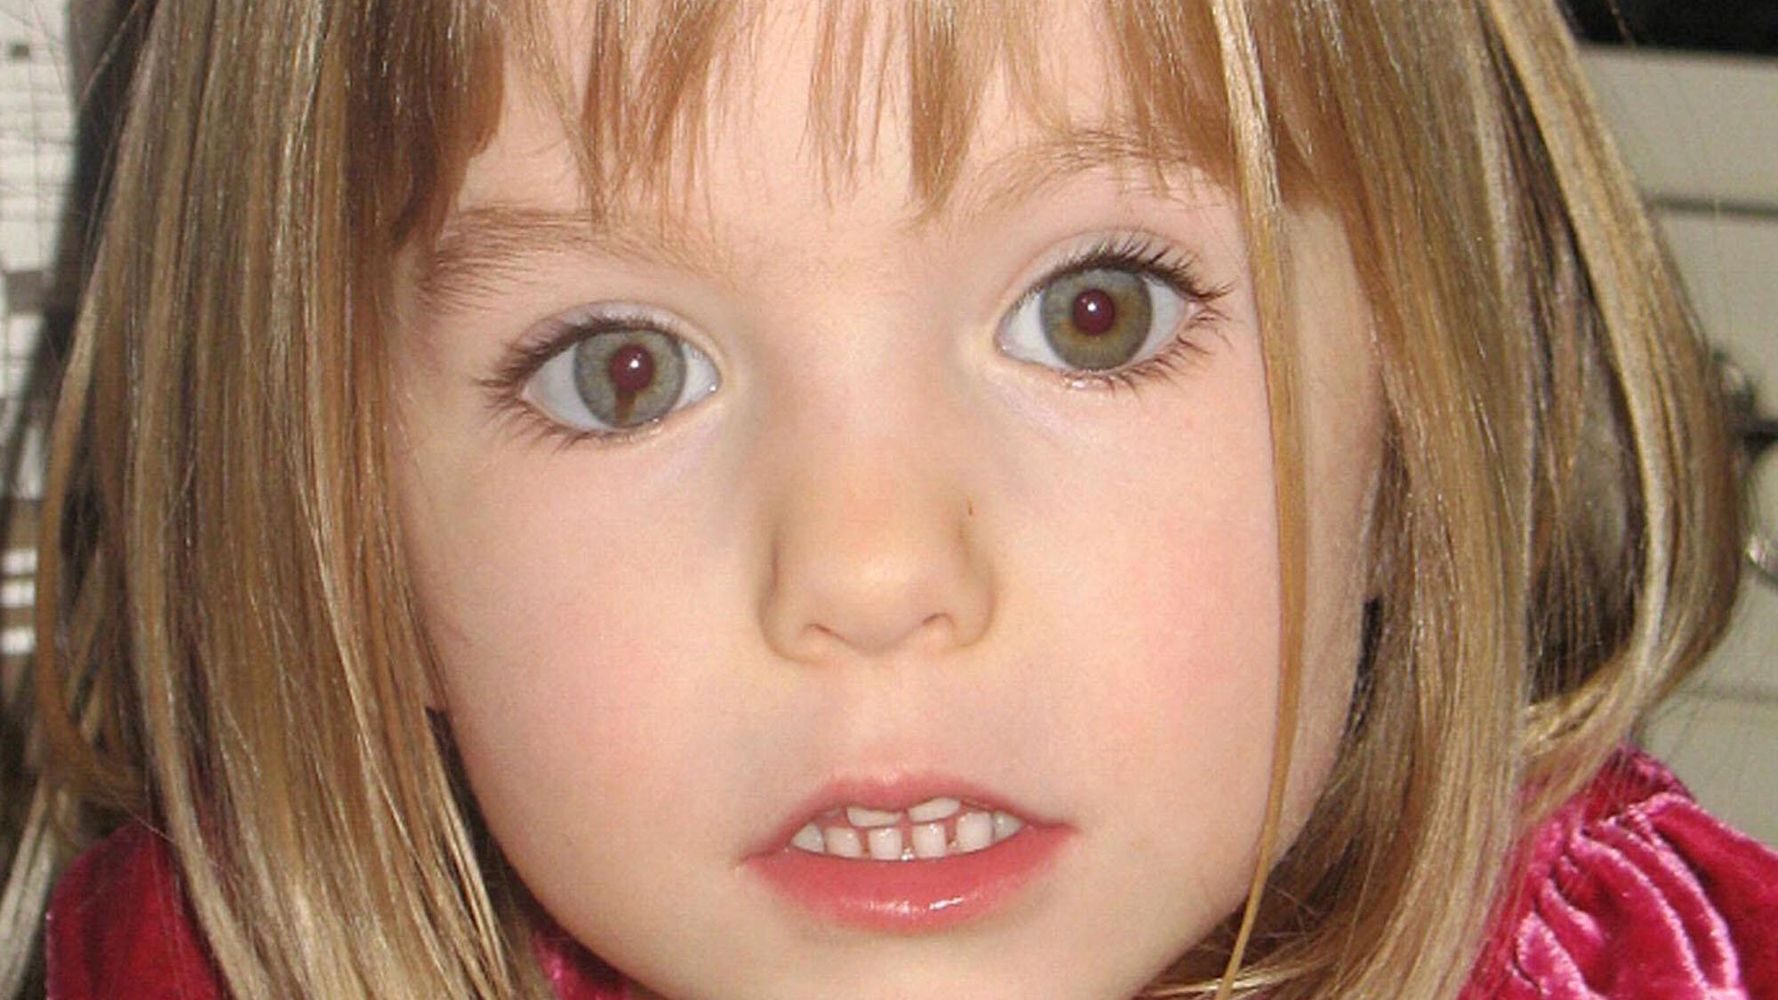 Le Portugal nomme un suspect dans l’enquête sur la disparition de la fille britannique Madeleine McCann